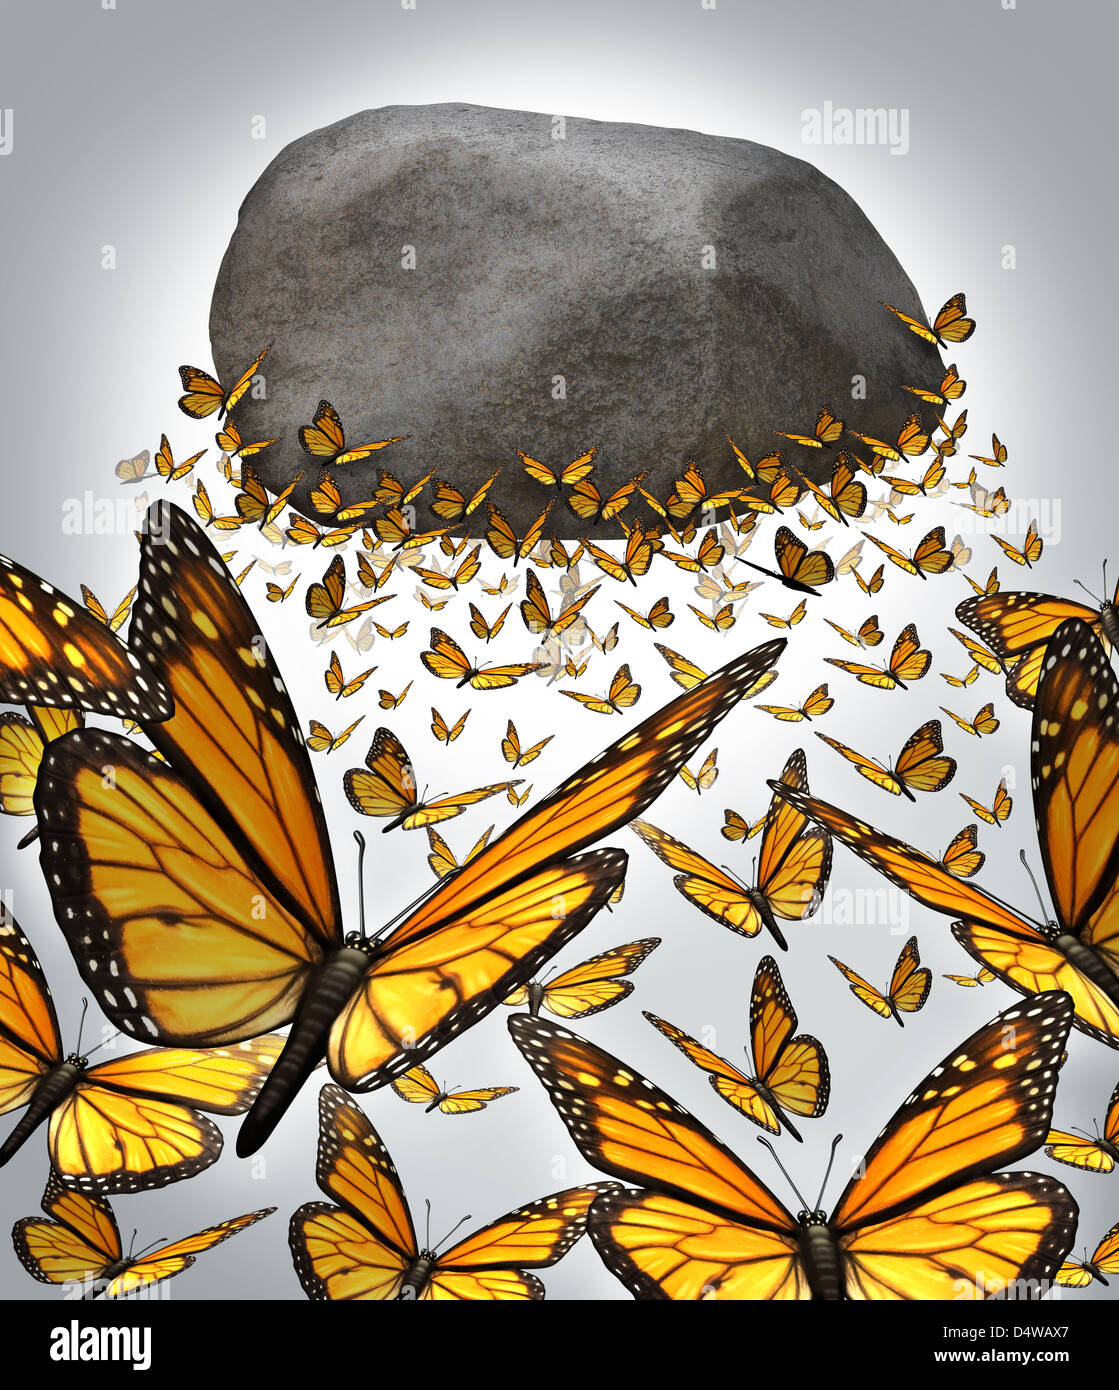 Gruppe Kraft und die Macht als ein Geschäftskonzept mit einem Team von Monarch Schmetterlinge bilden eine solide organisierte Partnerschaft zusammen zu arbeiten, die Herausforderung Anheben eines schweren Felsbrocken in der Luft zu überwinden. Stockfoto